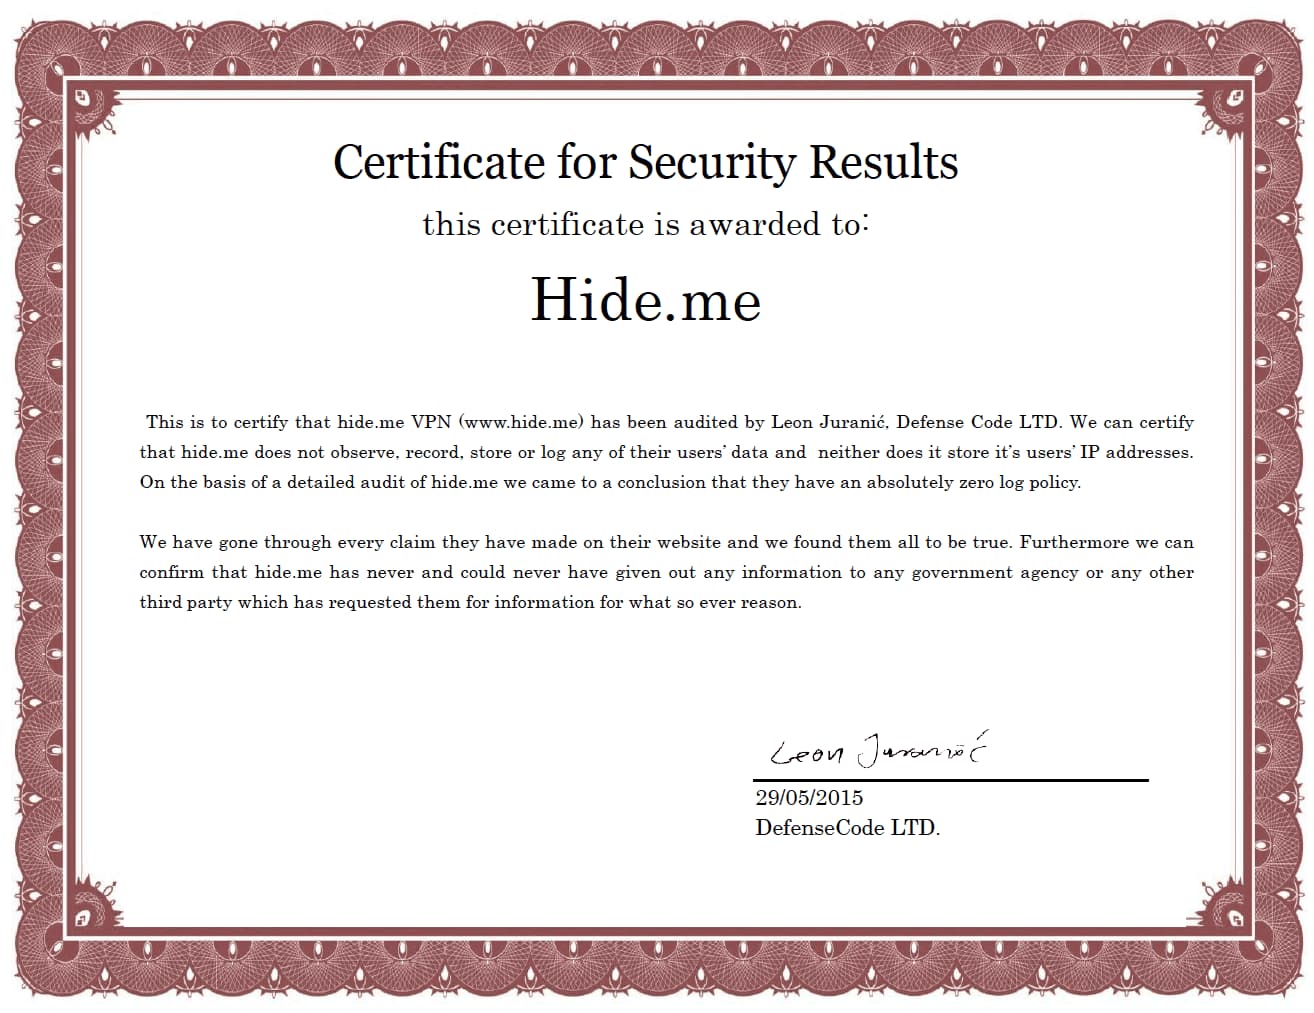 Certificato di audit rilasciato ad Hide.me da DefenseCode LTD.